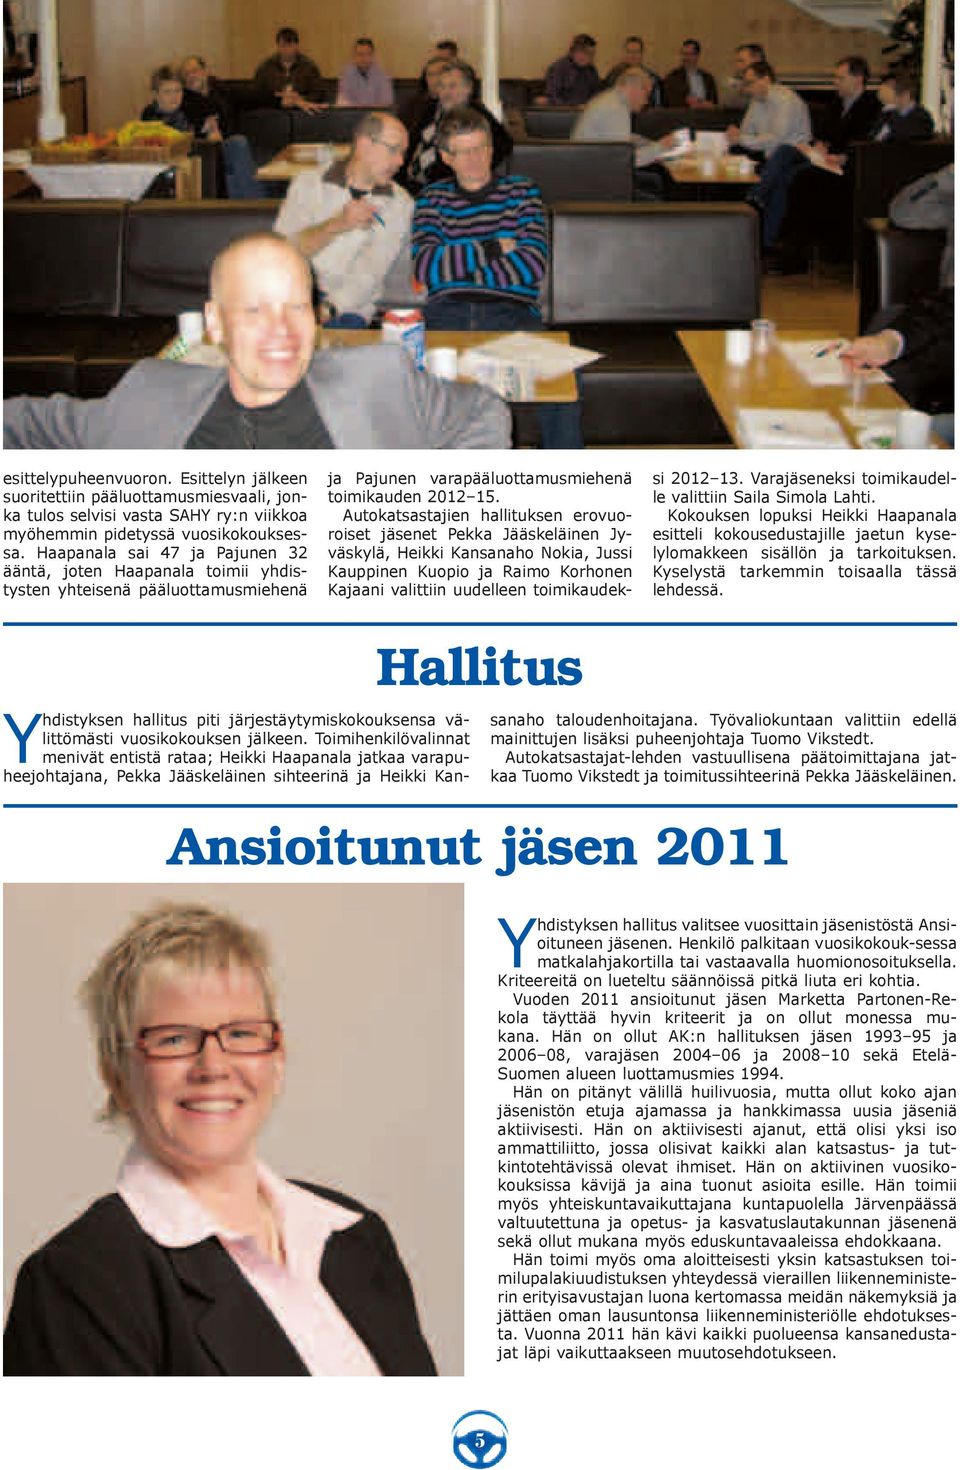 Autokatsastajien hallituksen erovuoroiset jäsenet Pekka Jääskeläinen Jyväskylä, Heikki Kansanaho Nokia, Jussi Kauppinen Kuopio ja Raimo Korhonen Kajaani valittiin uudelleen toimikaudeksi 2012 13.